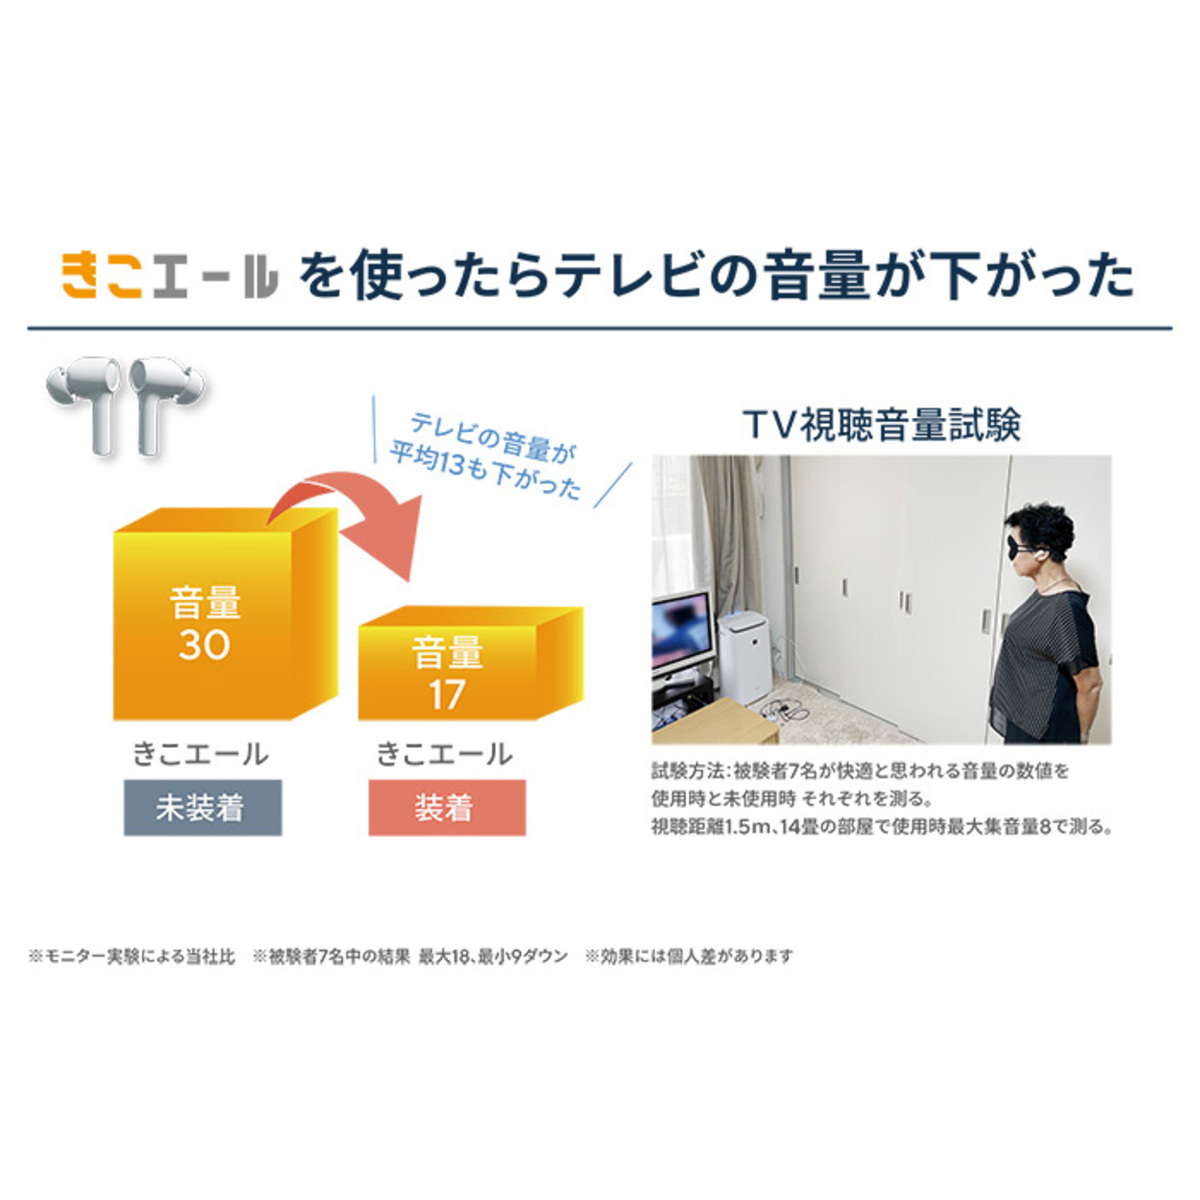 雑音カット機能搭載ワイヤレス集音器 きこエール きこエール - QVC.jp